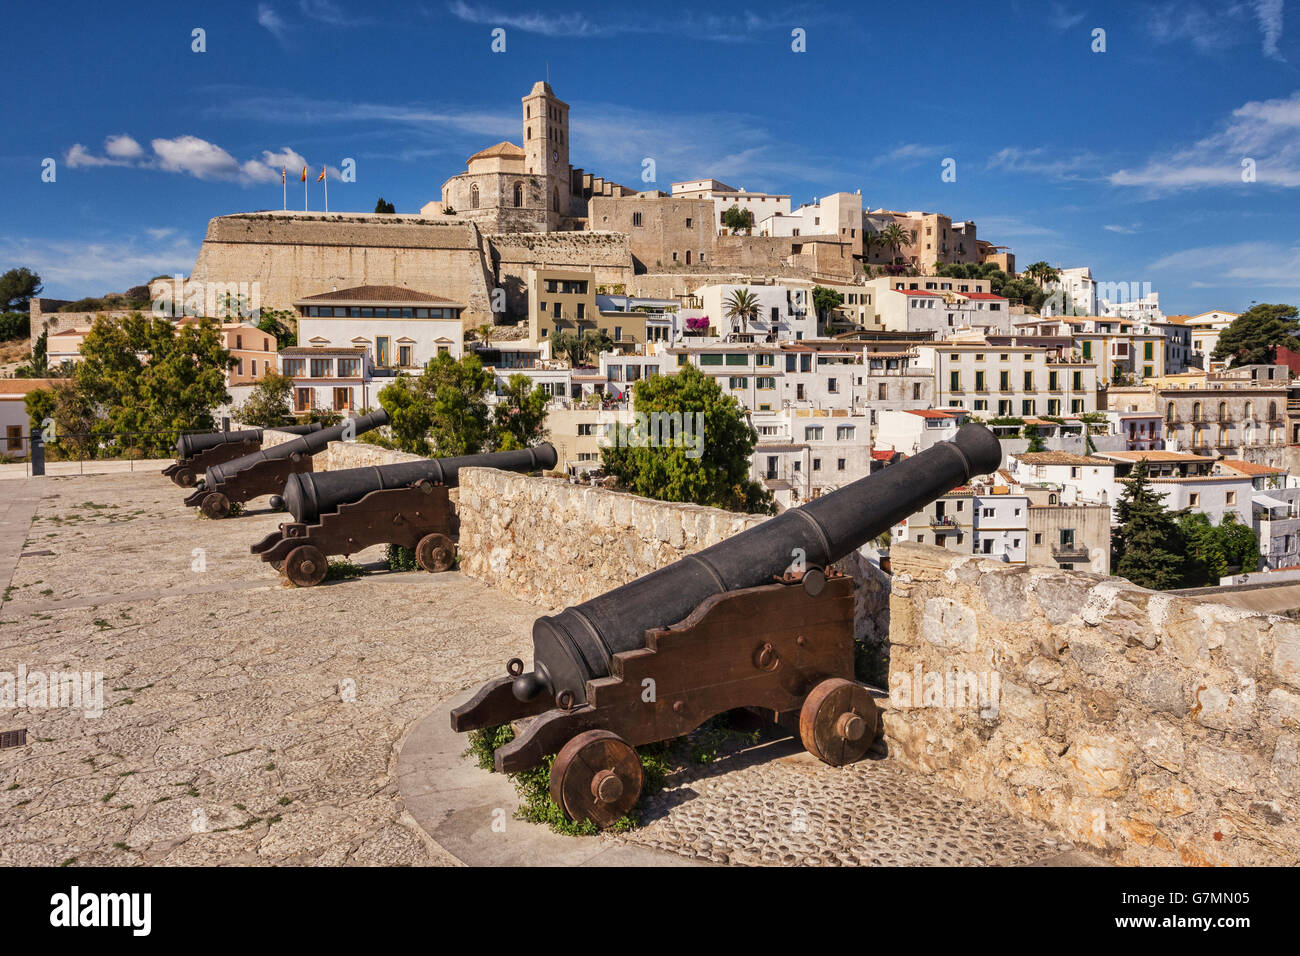 Die Dalt Vila, der Altstadt von Ibiza-Stadt, dominiert von der Kathedrale und Kanone montiert auf der Stadtmauer. Stockfoto